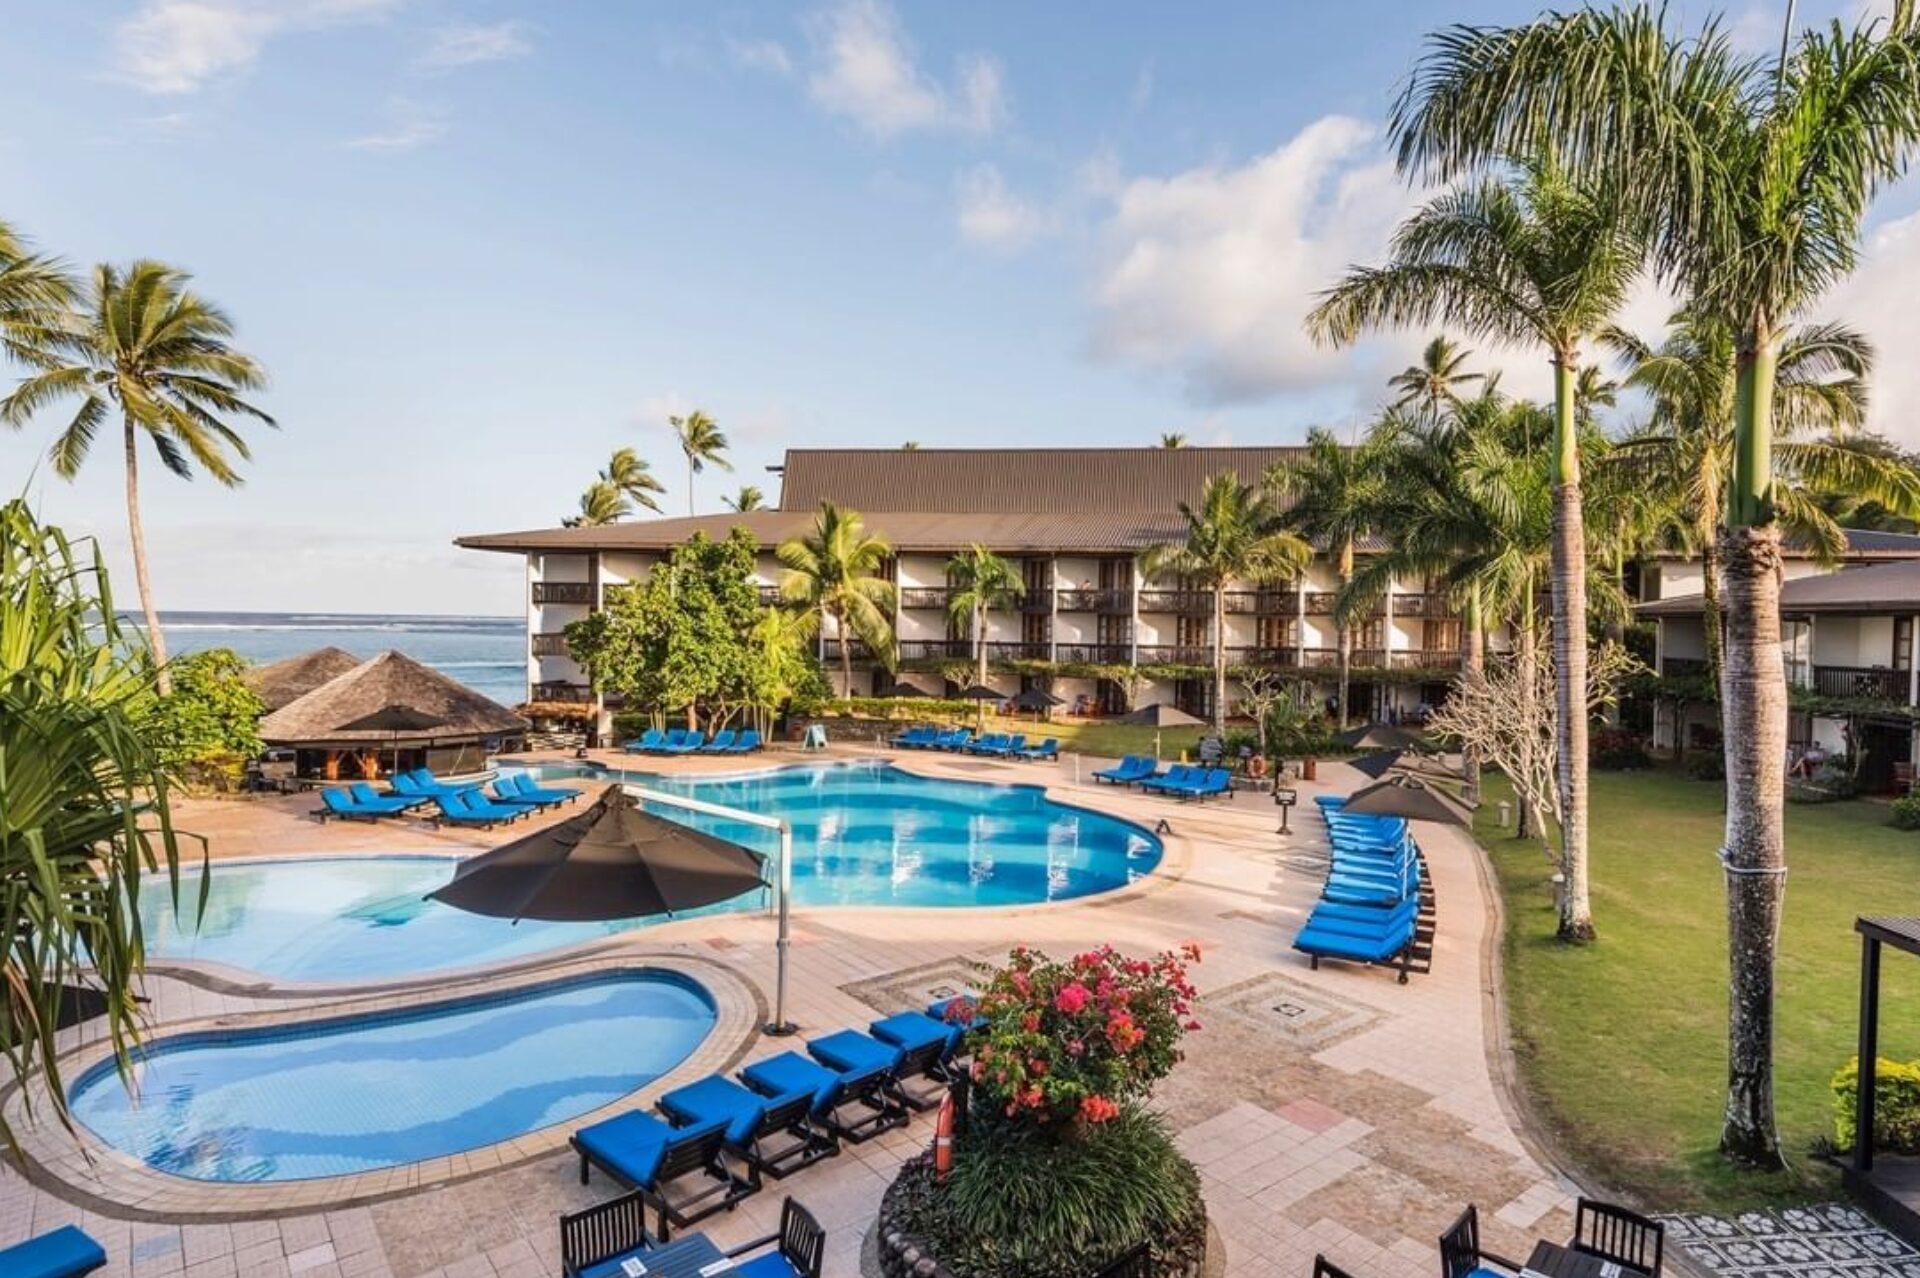 Warwick Hotel in Fiji feels Reassuringly Familiar